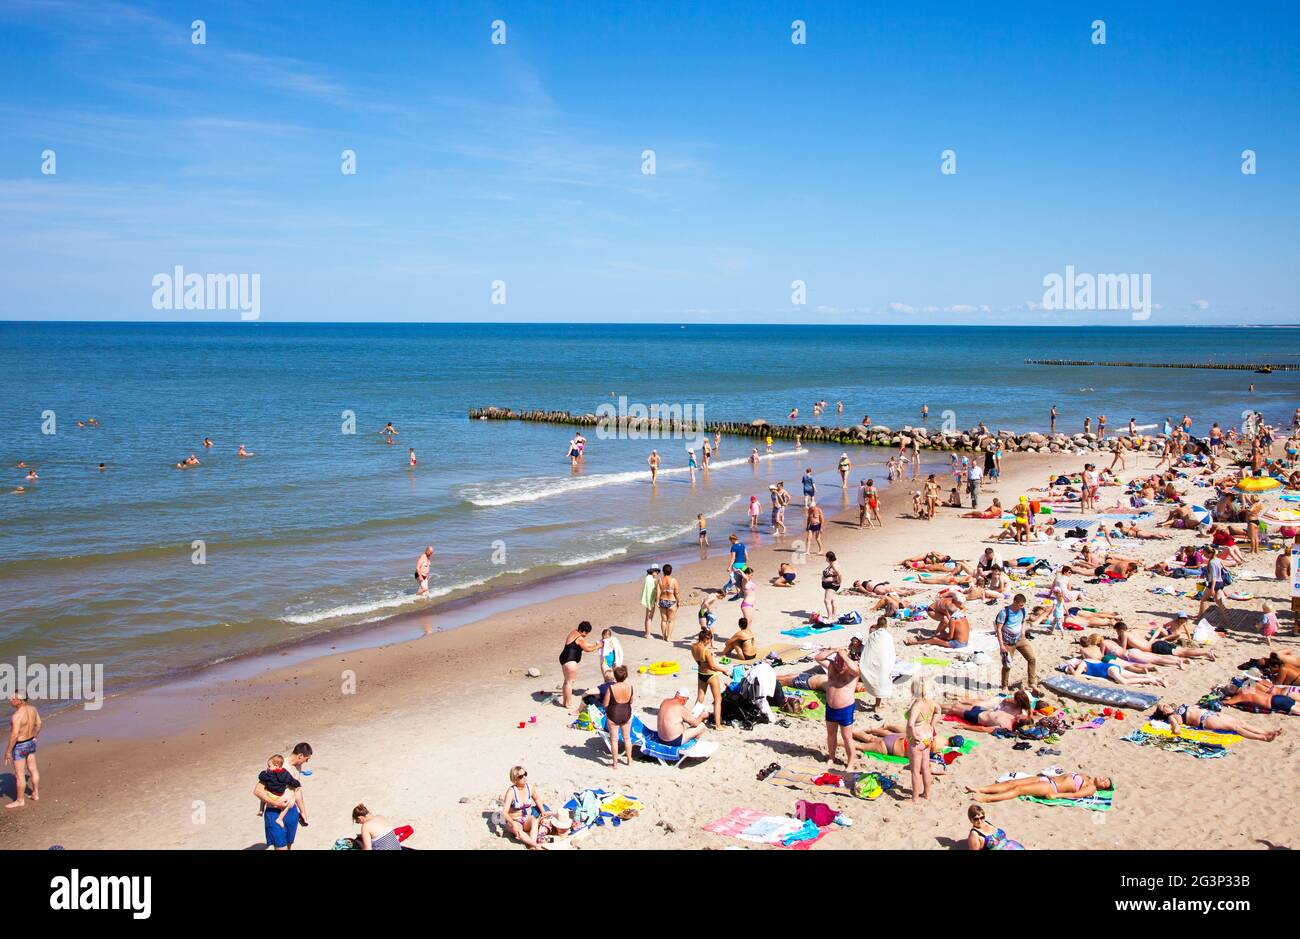 Zelenogradsk, Rusia - Agosto 17, 2017: una multitud de bañistas en la playa de Zelenogradsk situado en la costa del Mar Báltico, Rusia. Foto de stock